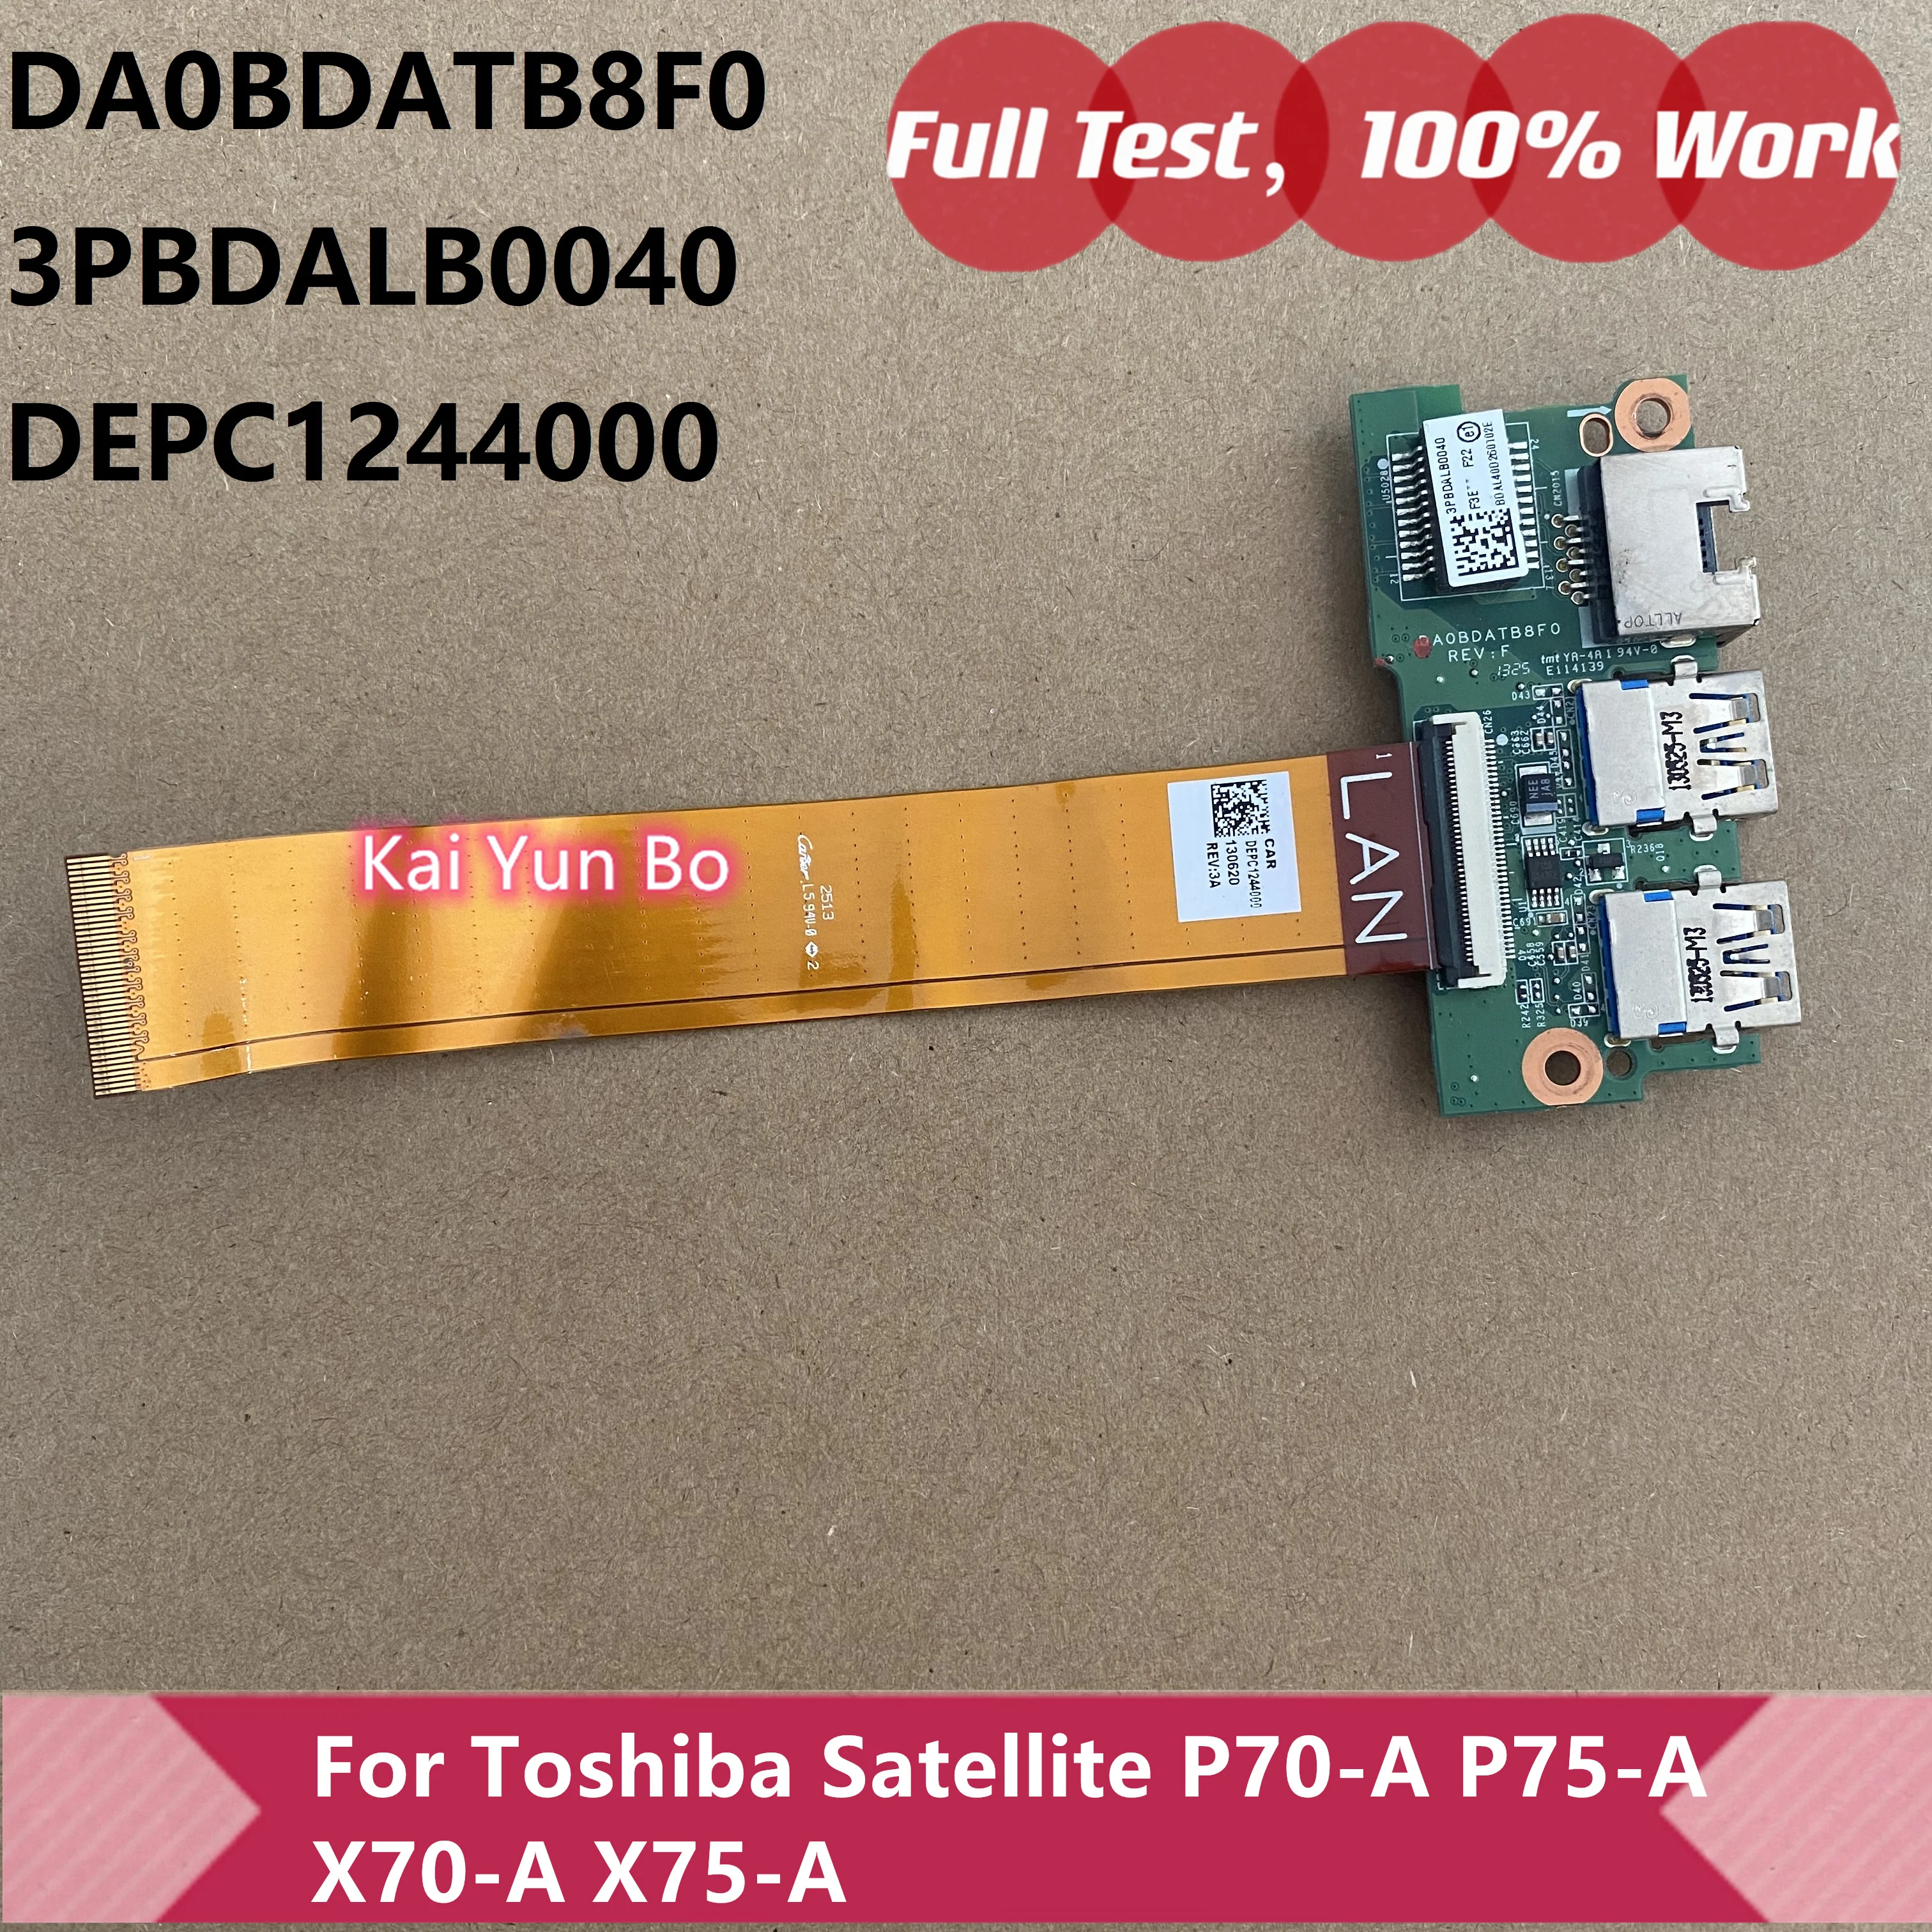 

Оригинальный кабель USB 3.0 LAN Audio Board W Toshiba Satellite P70-A P75-A Qosmio X70-A X75-A DA0BDATB8F0 DEPC1244000 3PBDALB0040